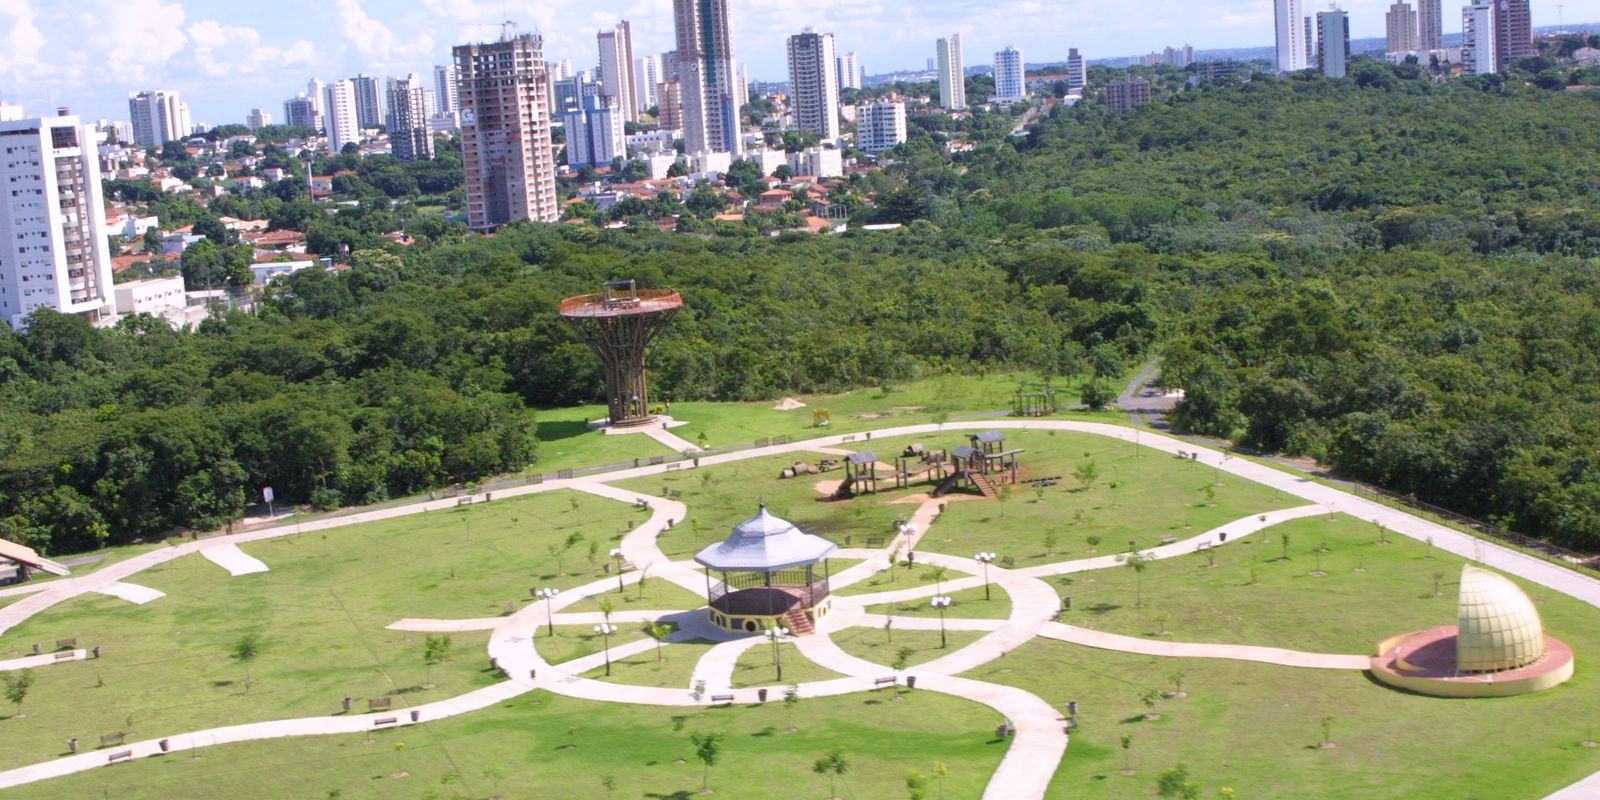 Justiça Federal manda fechar parque aquático em MT após decreto de  prefeitura para liberação durante pandemia, Mato Grosso